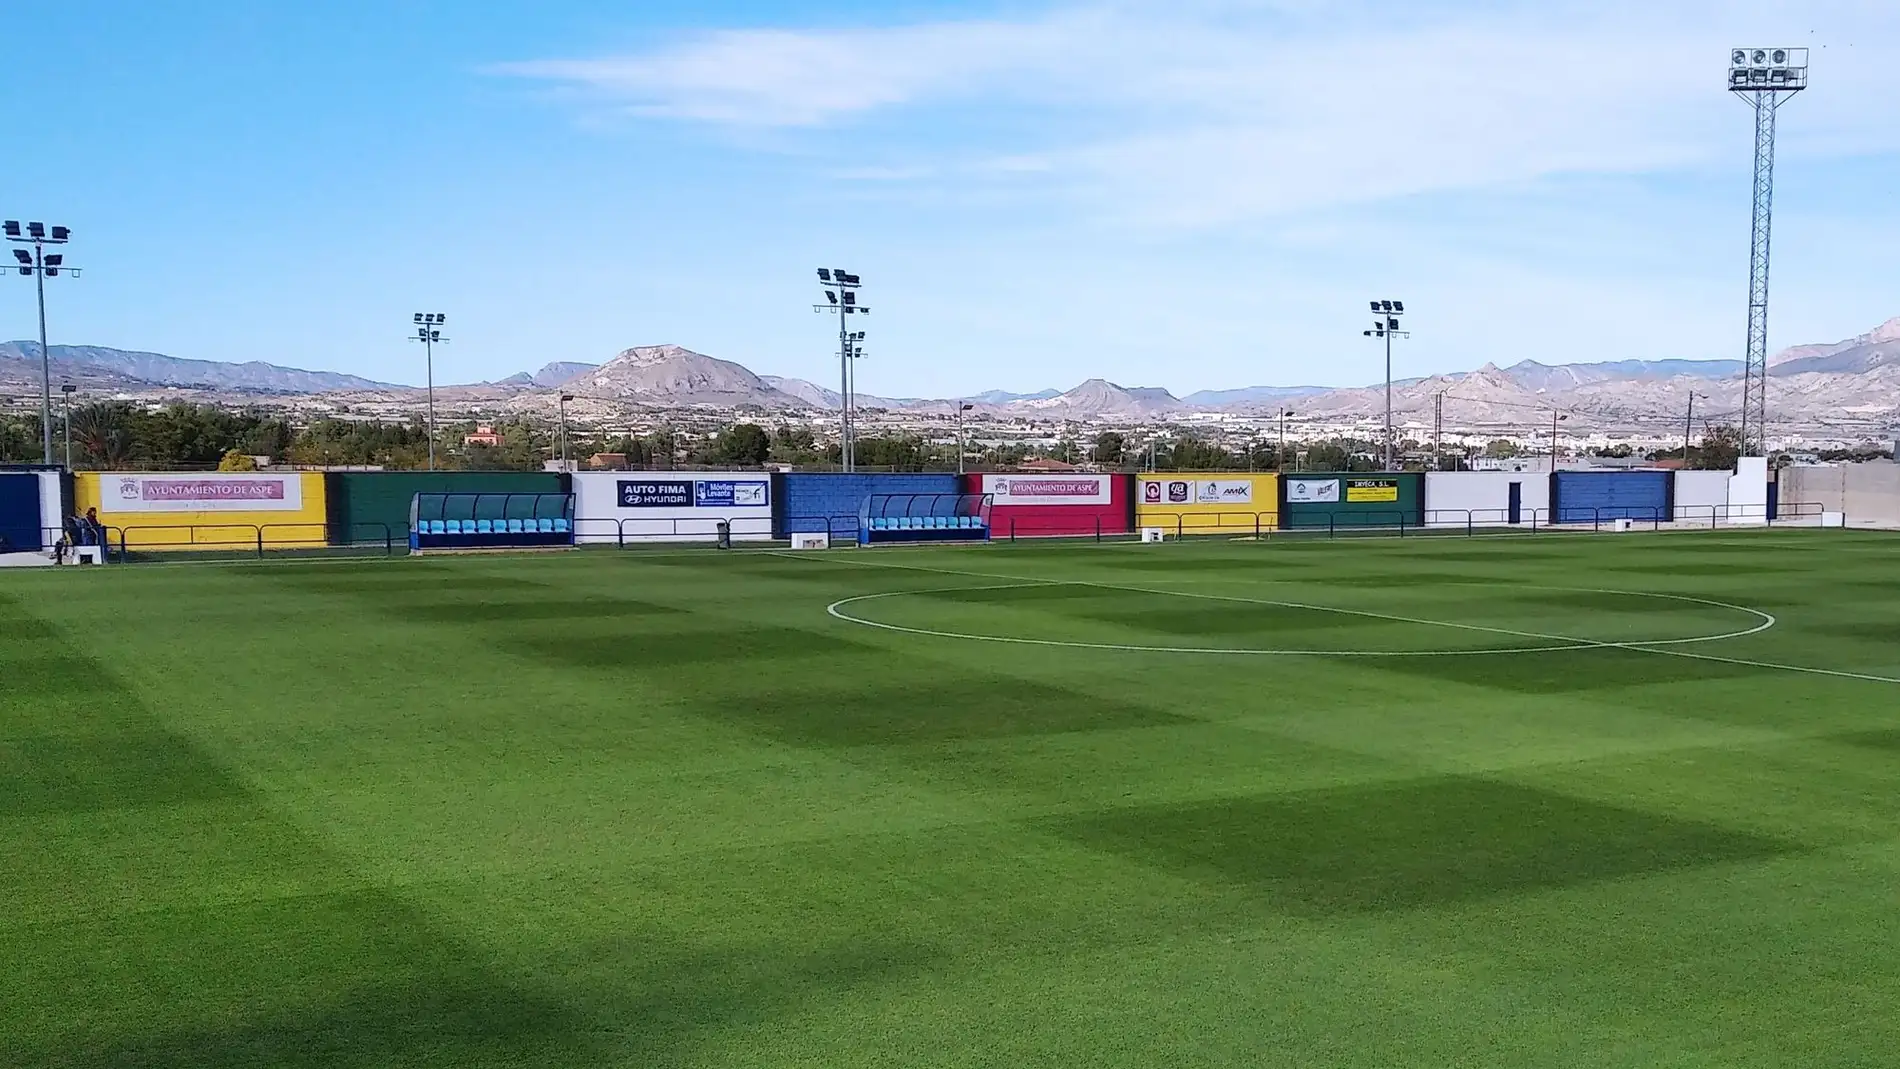 El estadio Las Fuentes de Aspe acoge este miércoles el duelo internacional Sub-17 entre España e Irlanda.